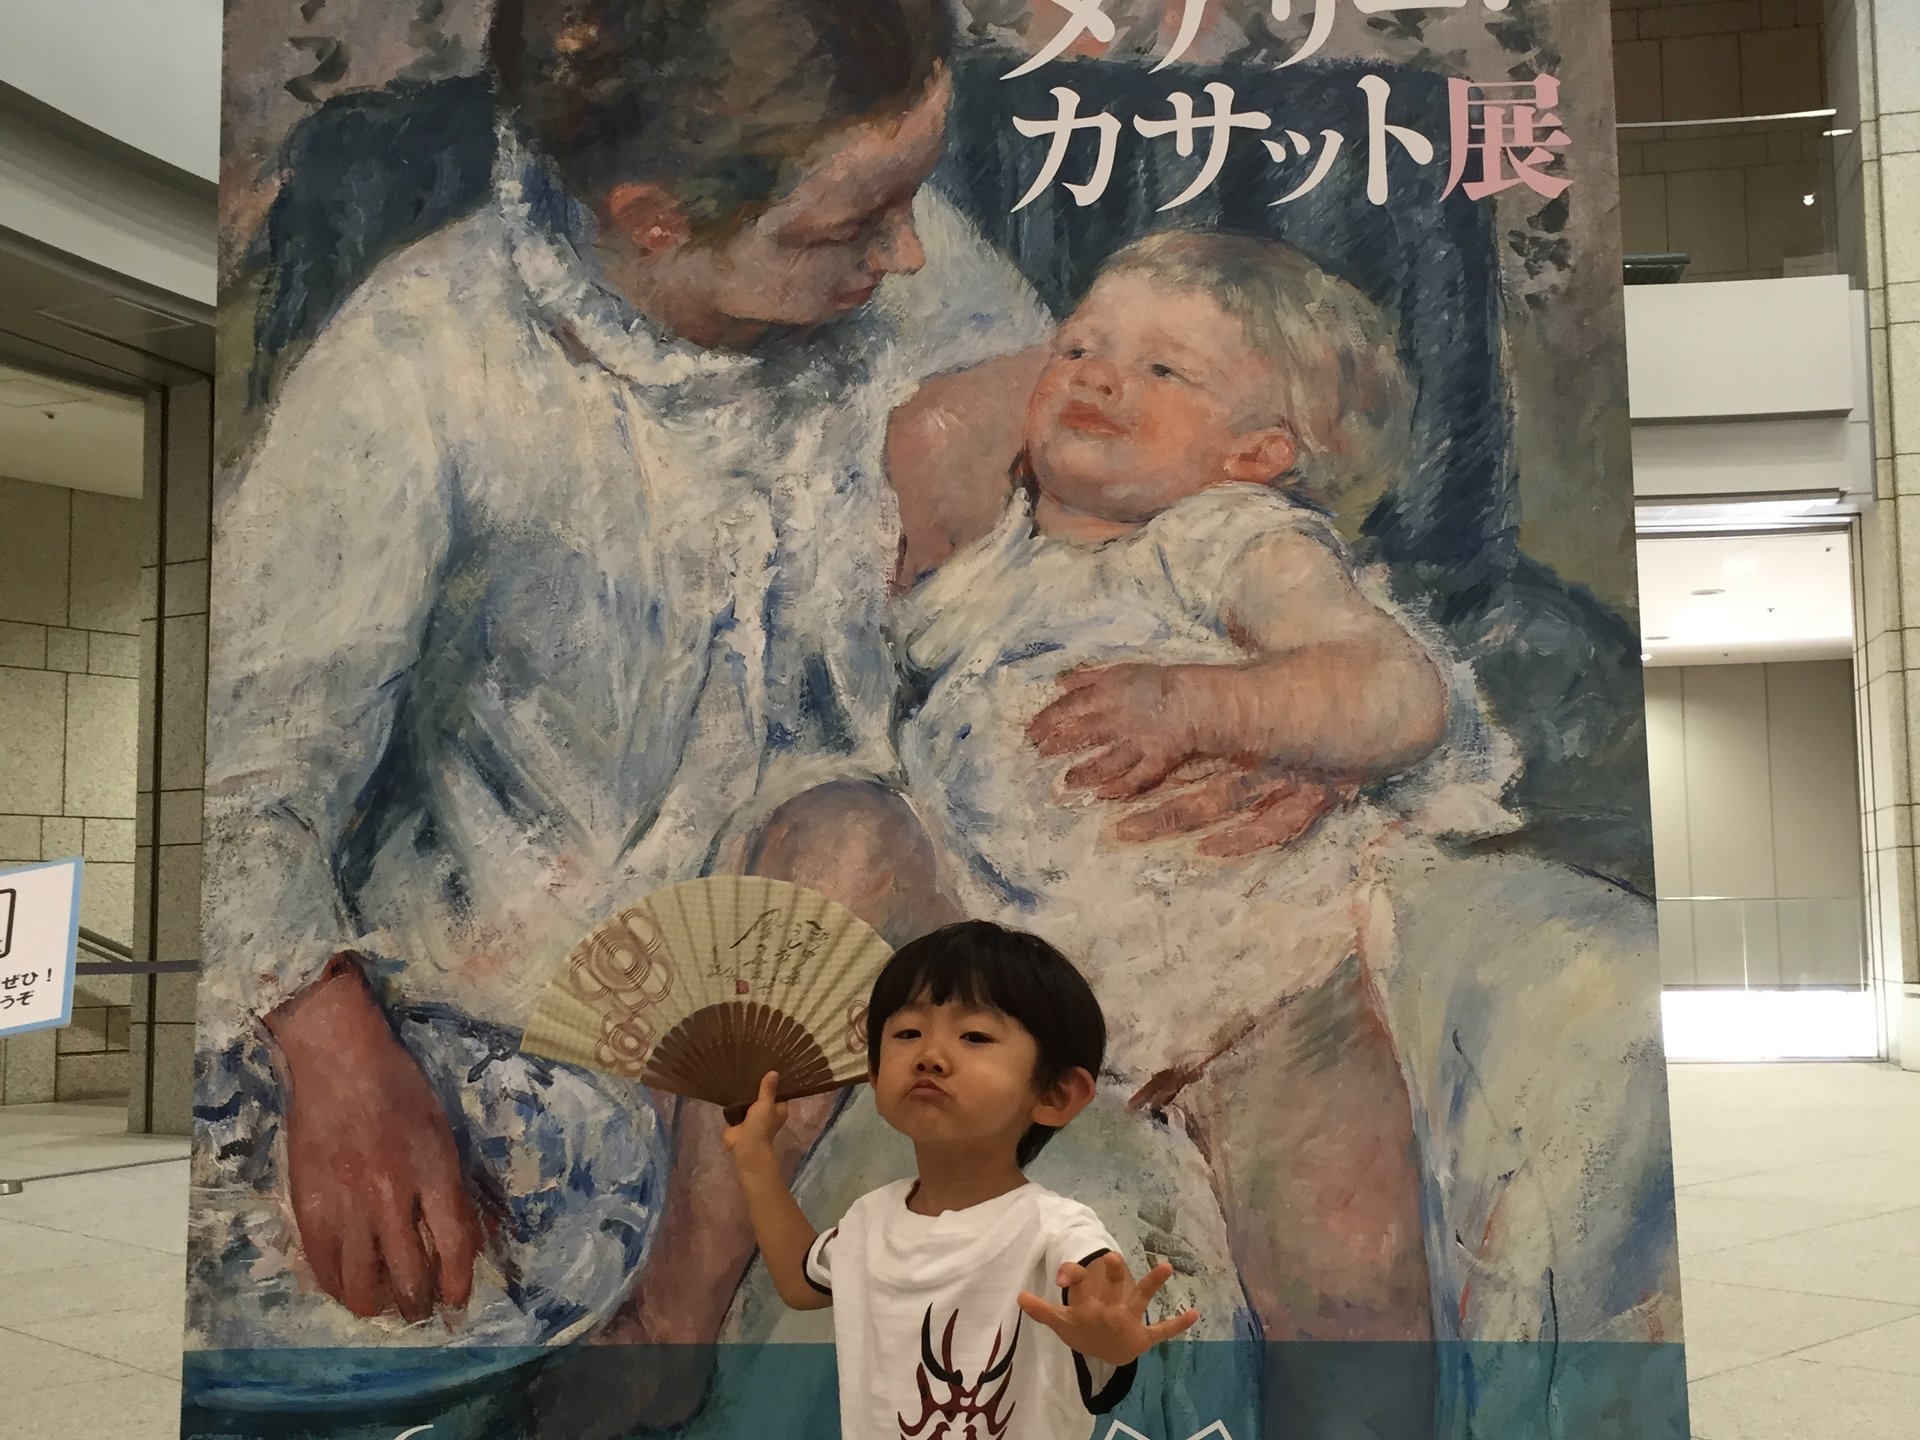 暑いときは涼しい美術館で過ごしてみてはいかがでしょう。ランチして横浜美術館巡りプラン！